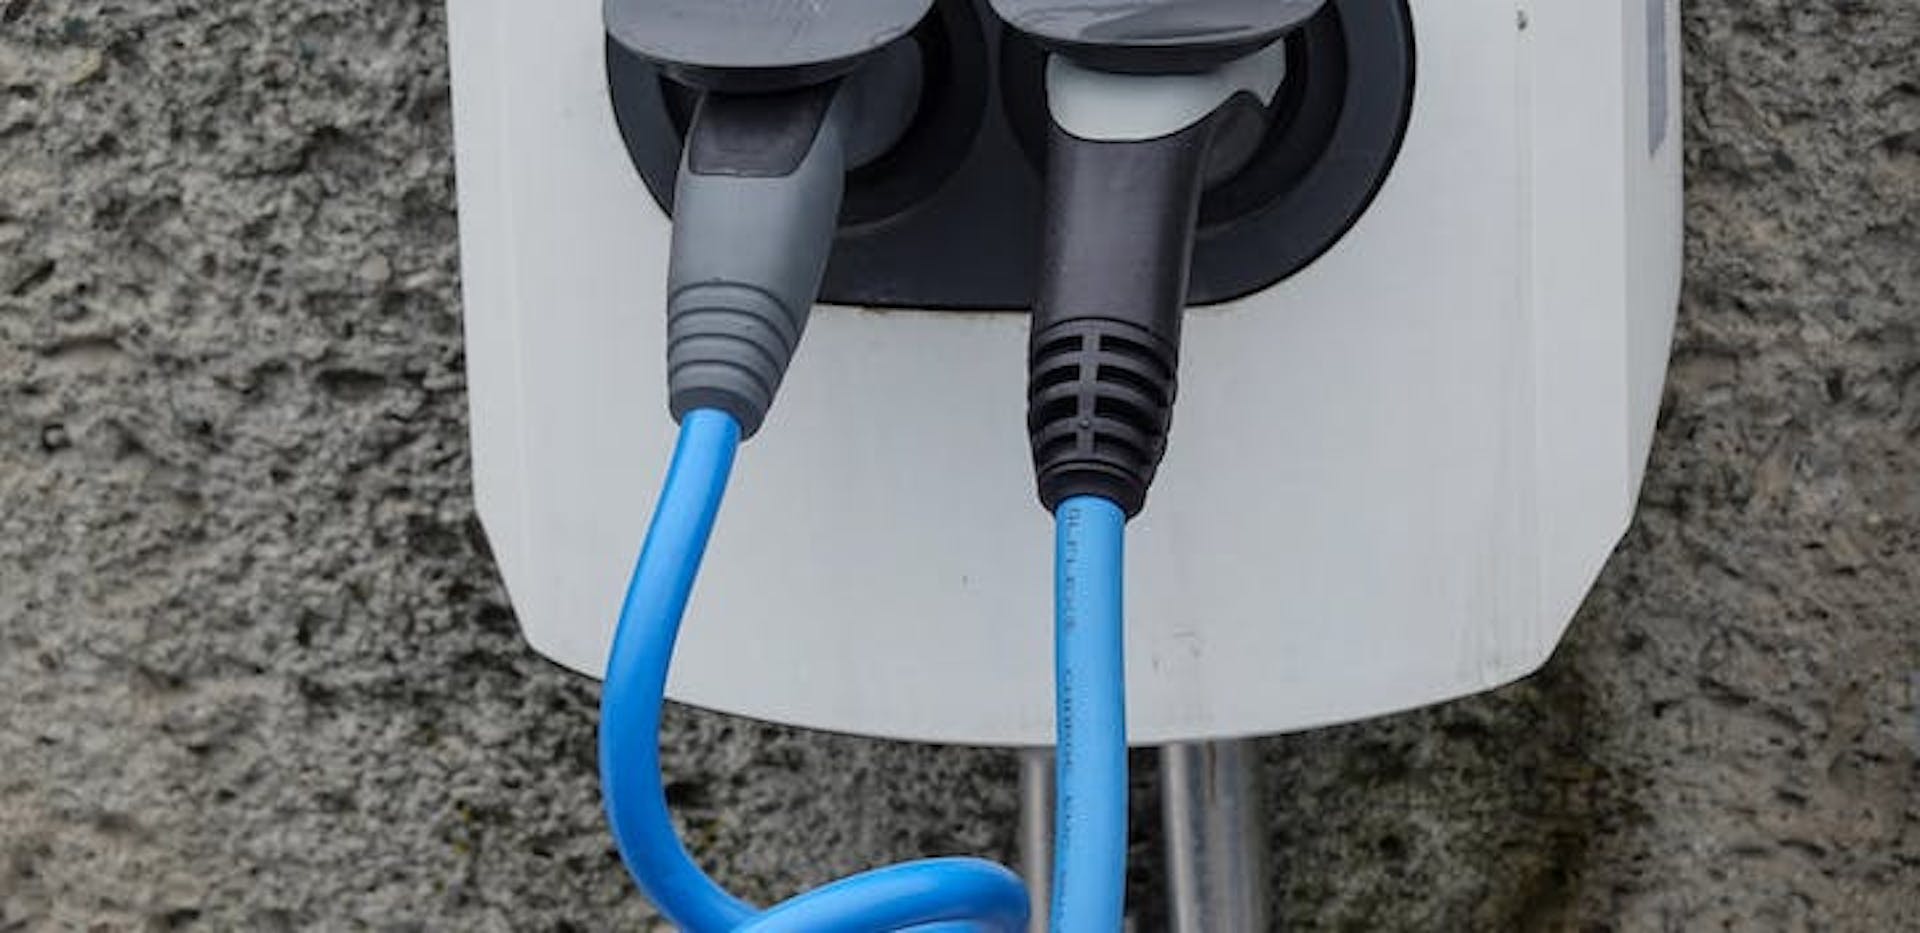 borne de recharge pour voiture électrique avec deux prises de type 2